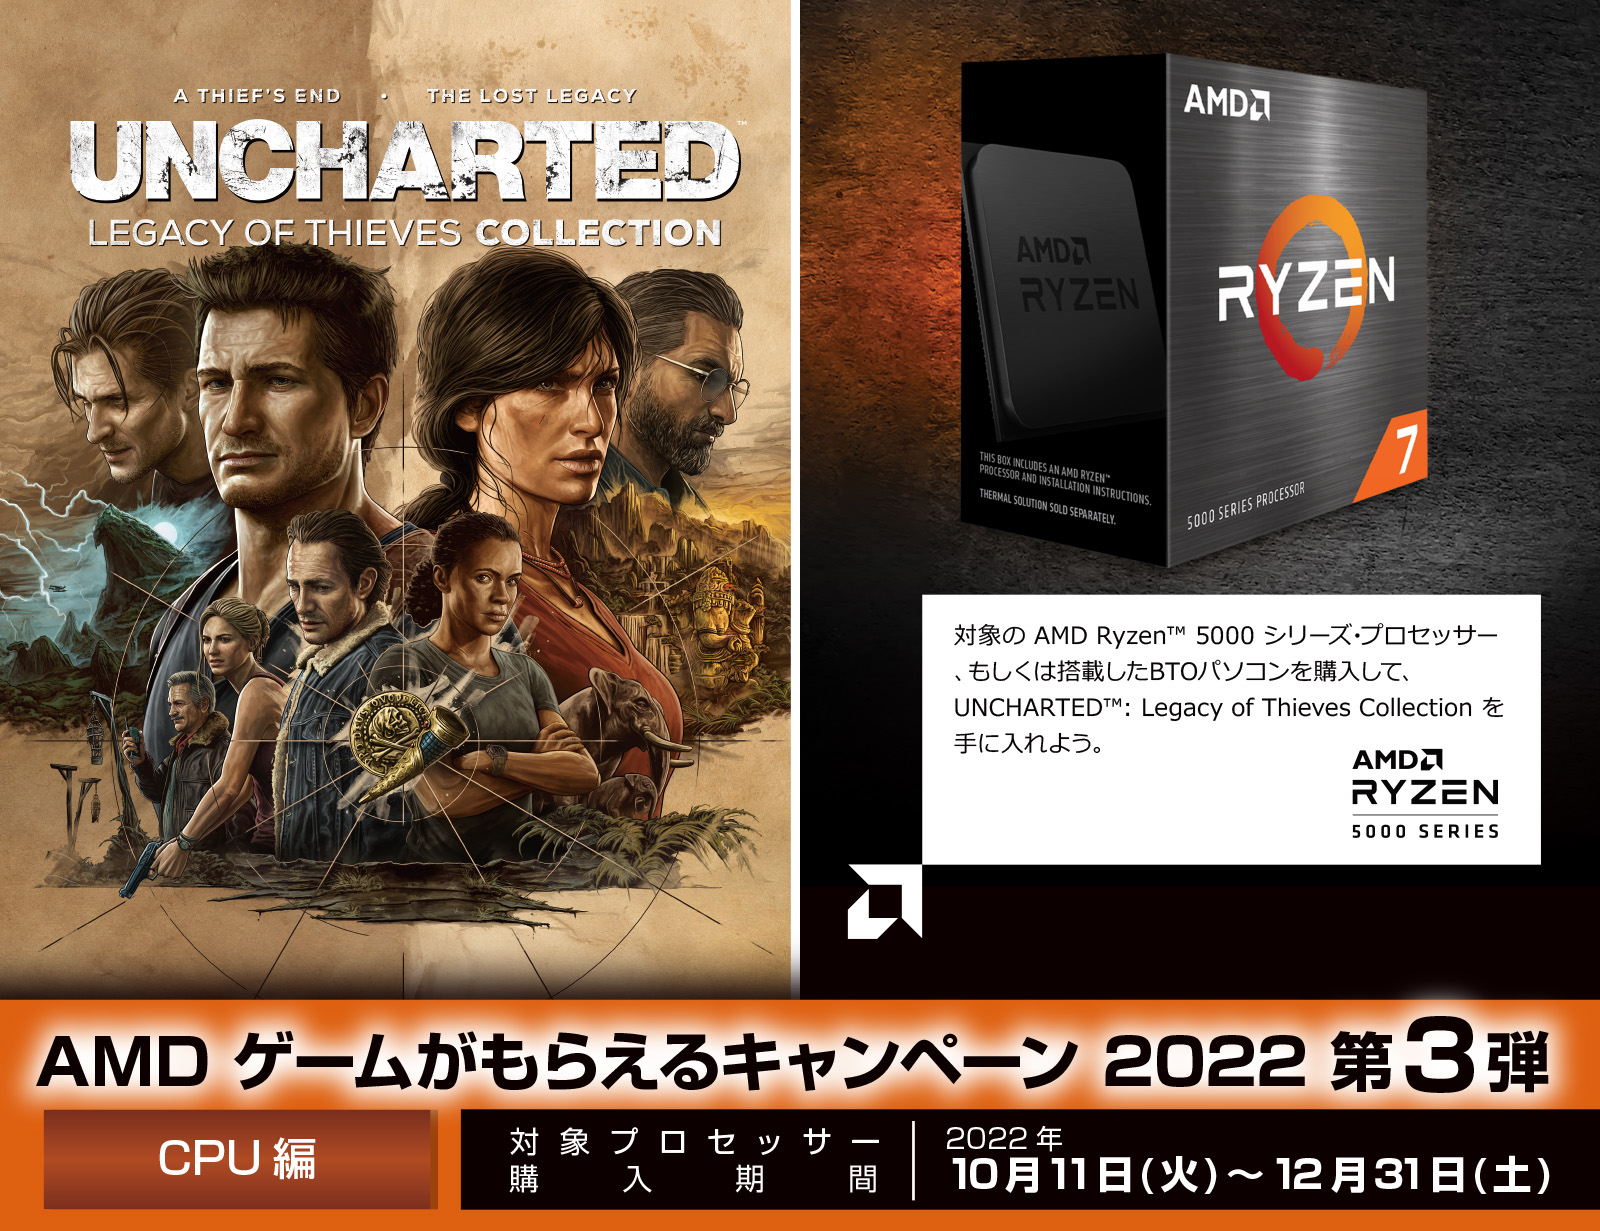 日本AMD、対象製品購入で「アンチャーテッド トレジャーハンター